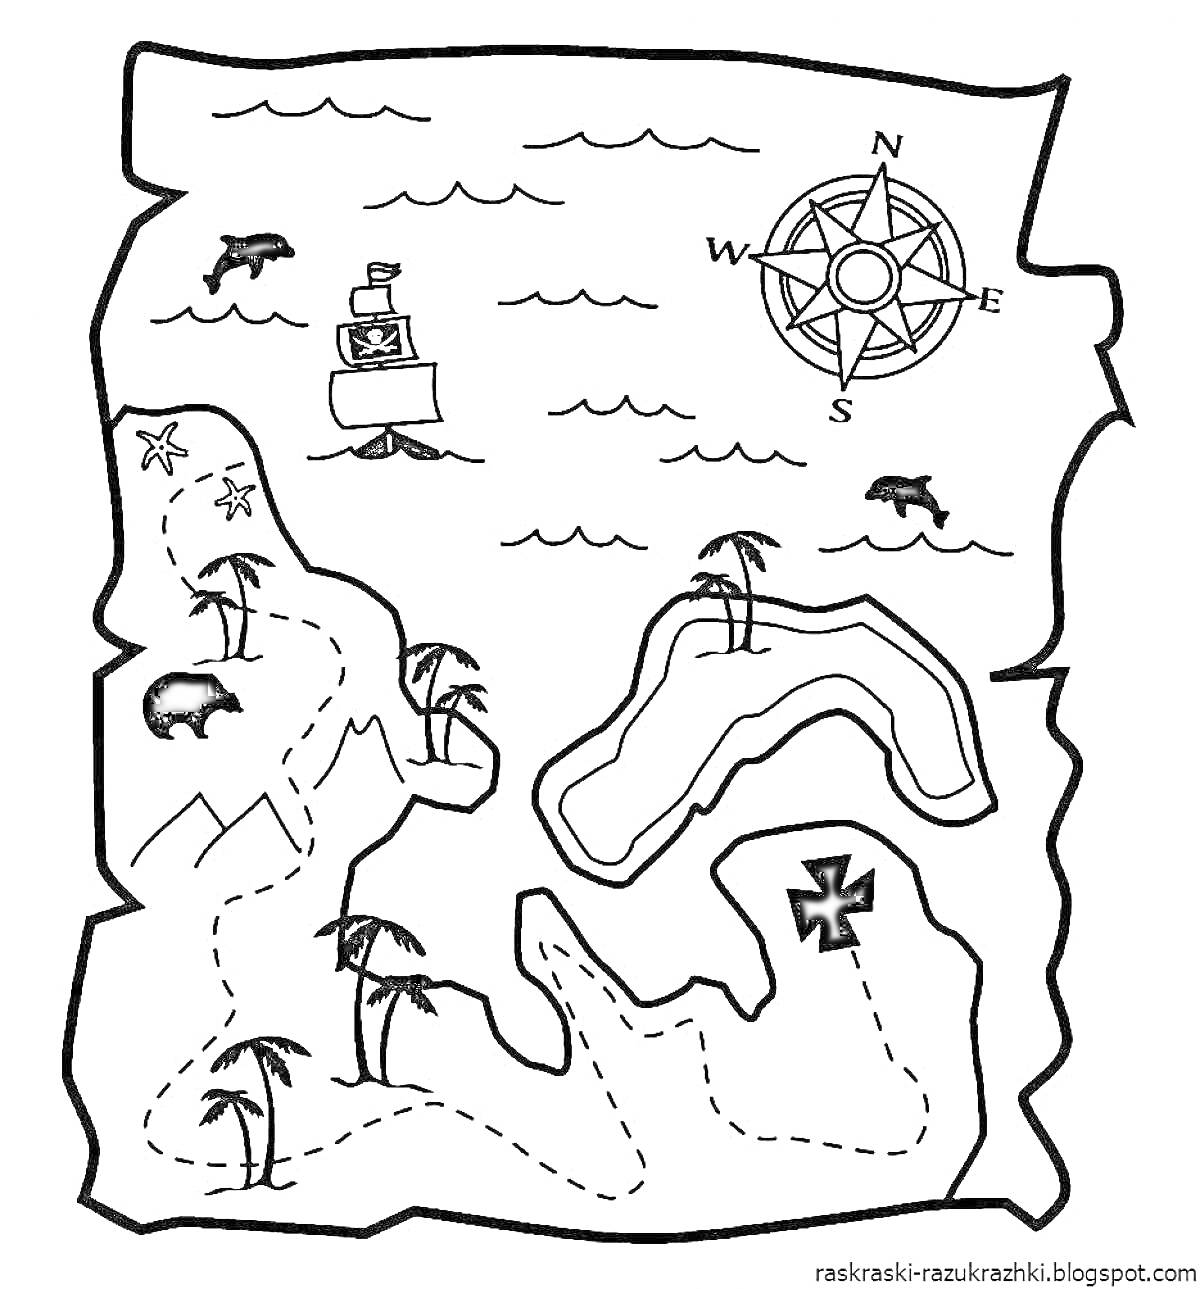 Раскраска Карта с сокровищами с пиратским кораблём, компасом, пальмами, звёздами, дельфинами и медведем